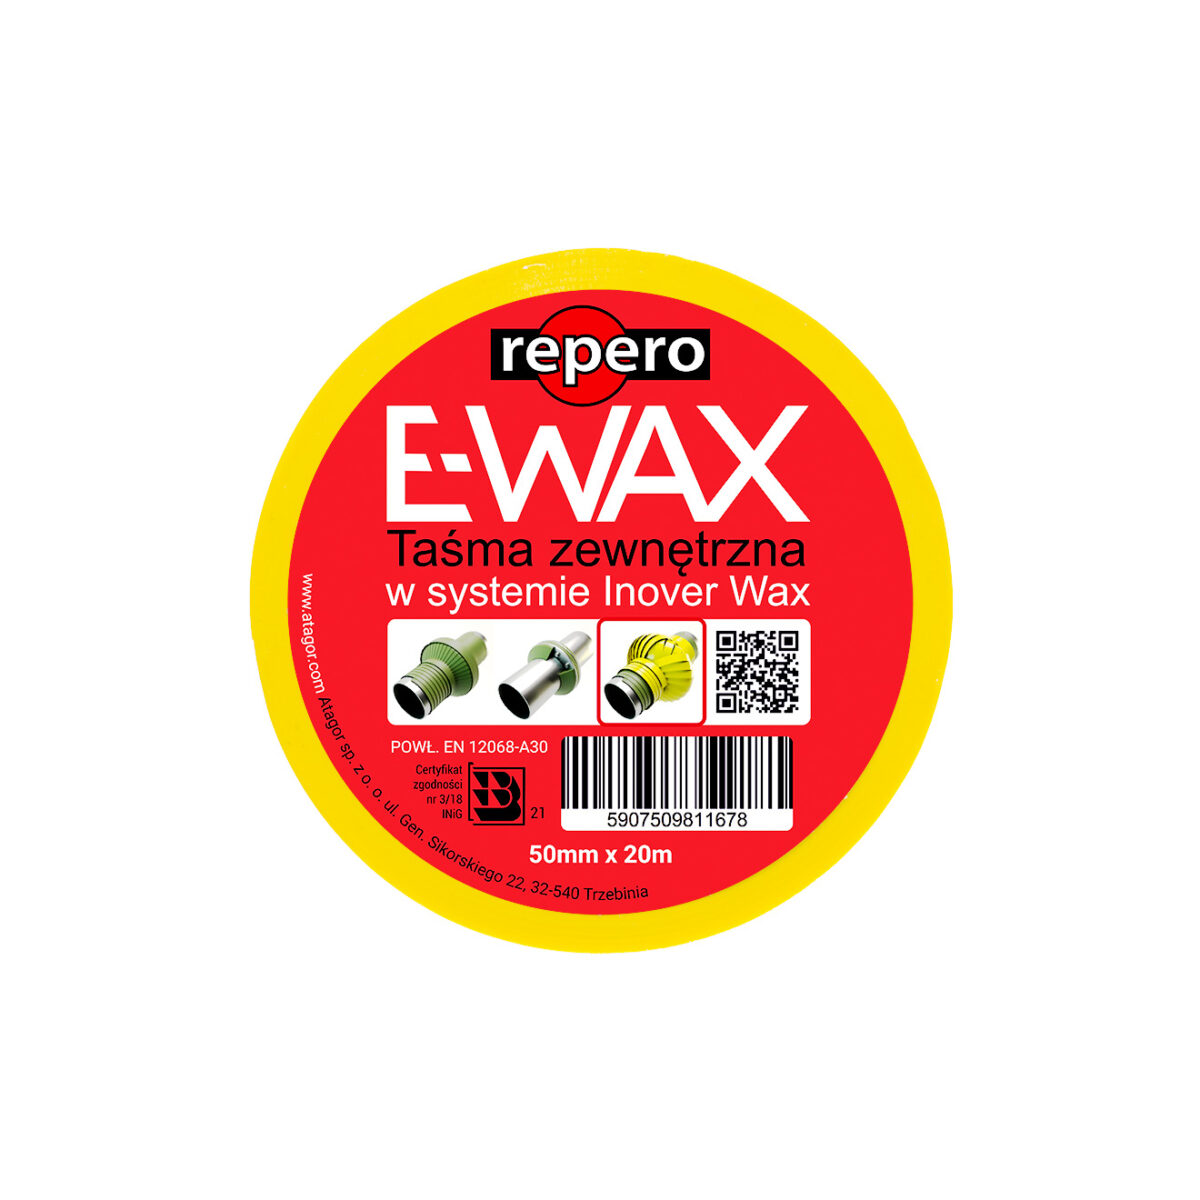 Taśma antykorozyjna zewnętrzna - repero E-Wax